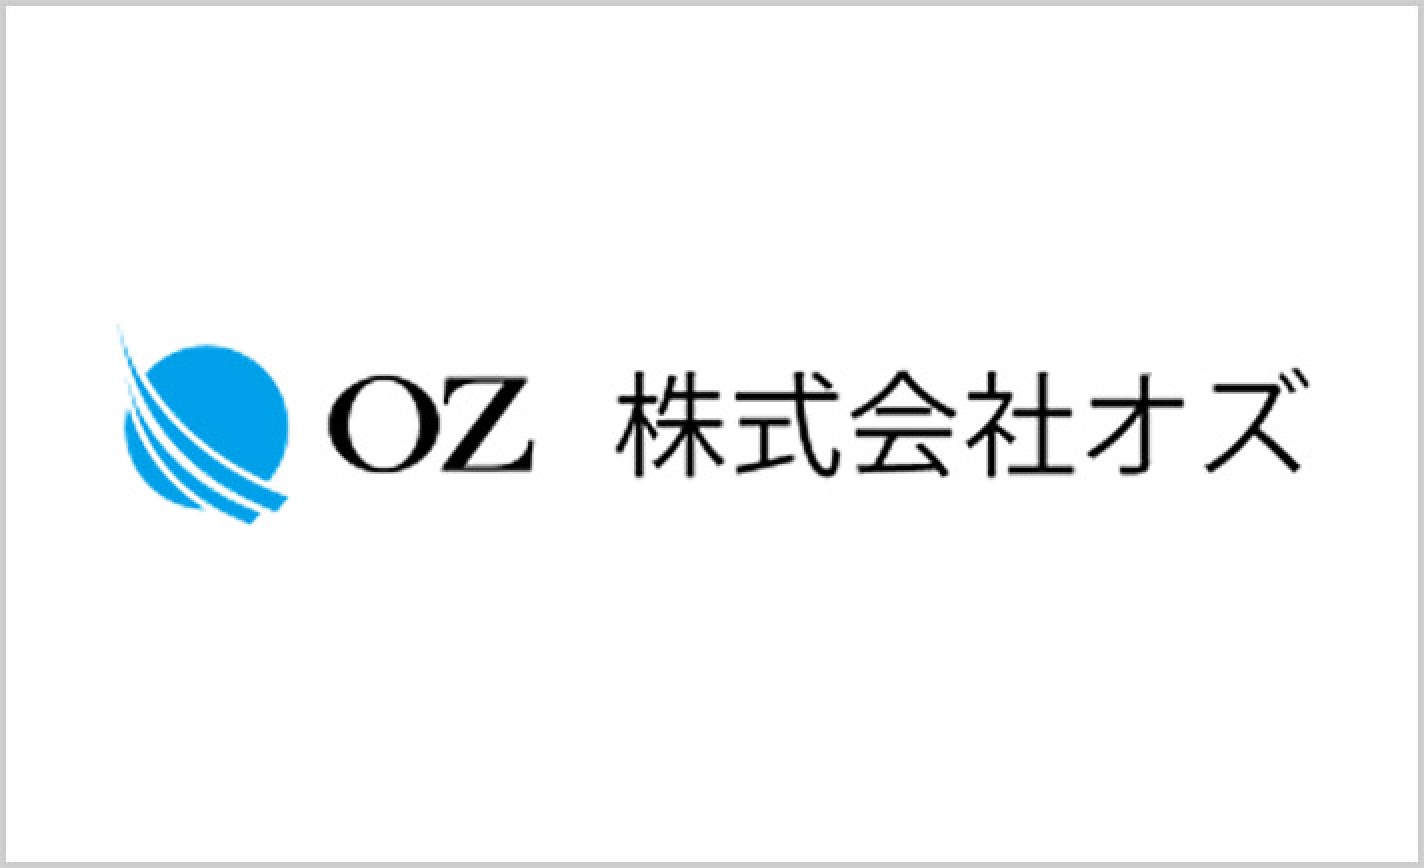 新規メーカーのオズが公式ホームページで同社のパチスロ第1弾「OZ-1」の機種情報を公開！打ち方やゲームフローなども掲載!! eyecatch-image